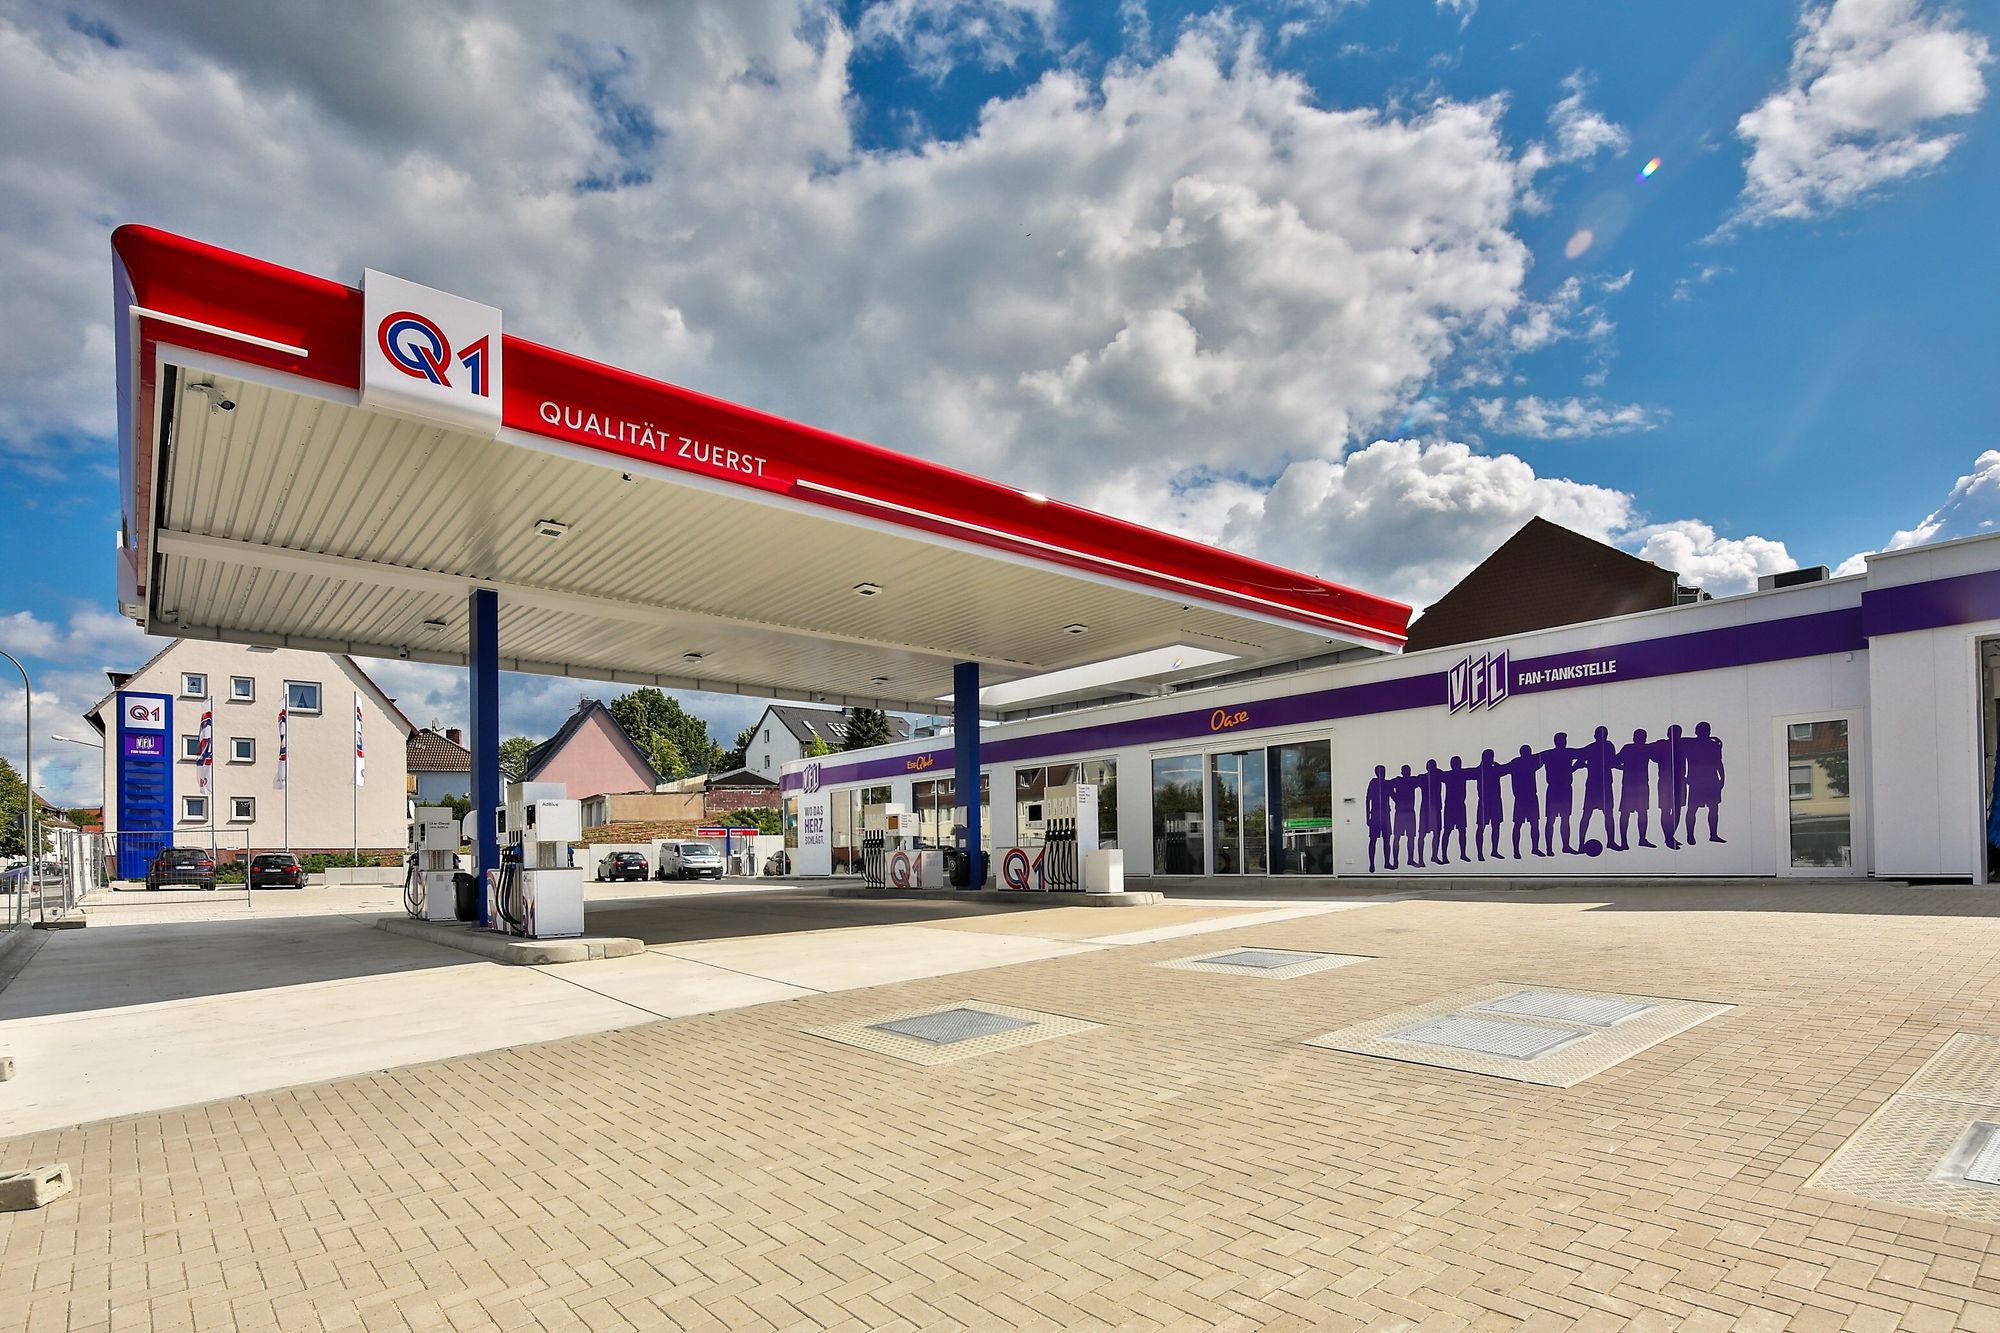 Автозаправочная станция Q1 для футбольных болельщиков «Оснабрюк» (Германия)